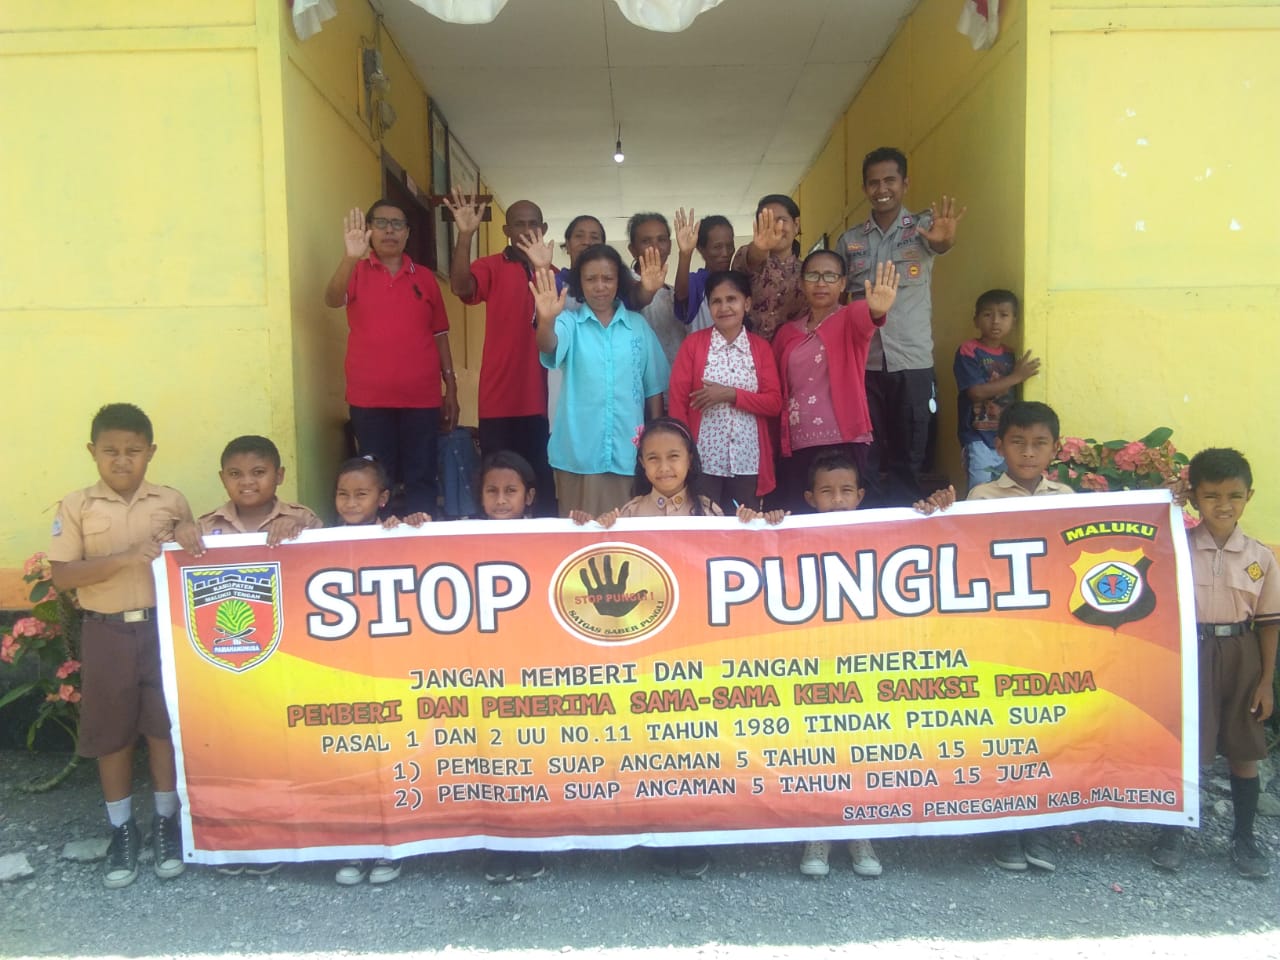 Sosialisasi Saber Pungli, Bhabinkamtibmas Negeri Waraka di Sekolah SD Kristen Negeri Waraka